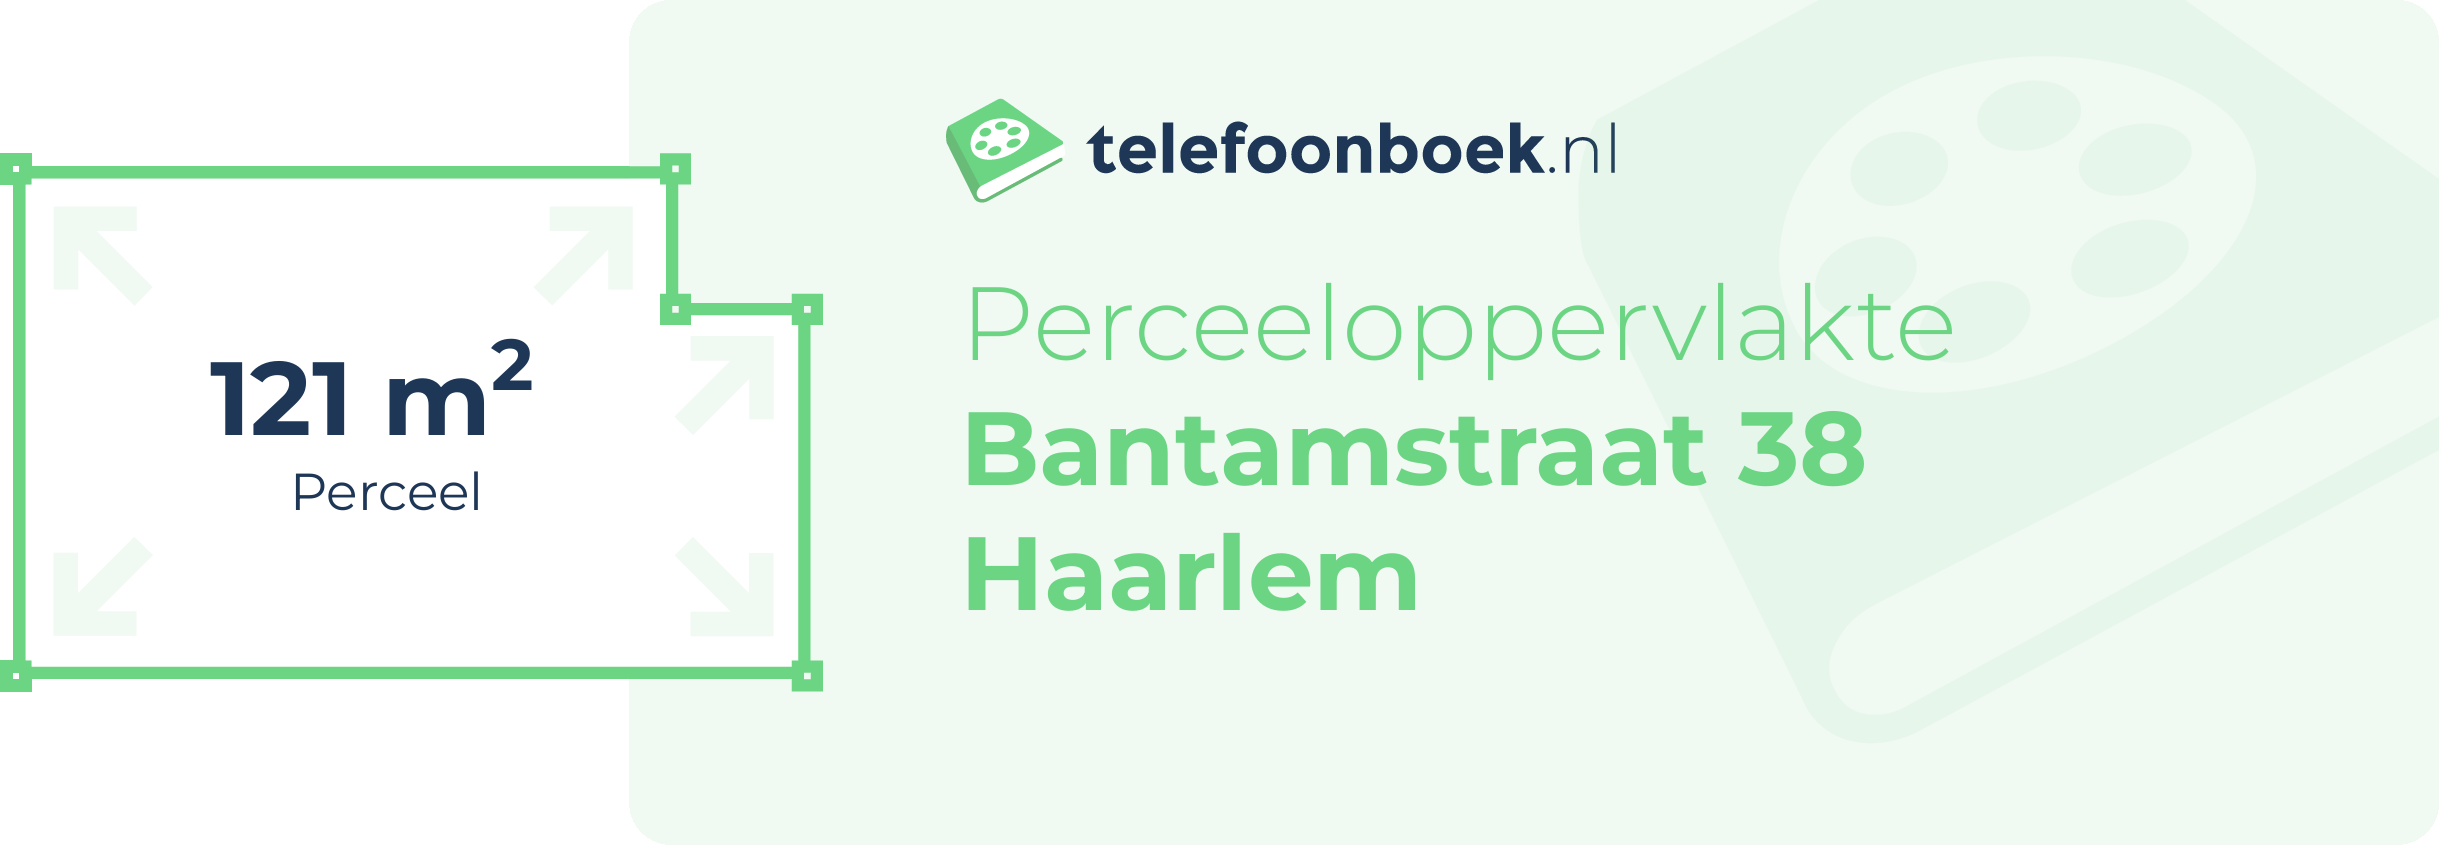 Perceeloppervlakte Bantamstraat 38 Haarlem